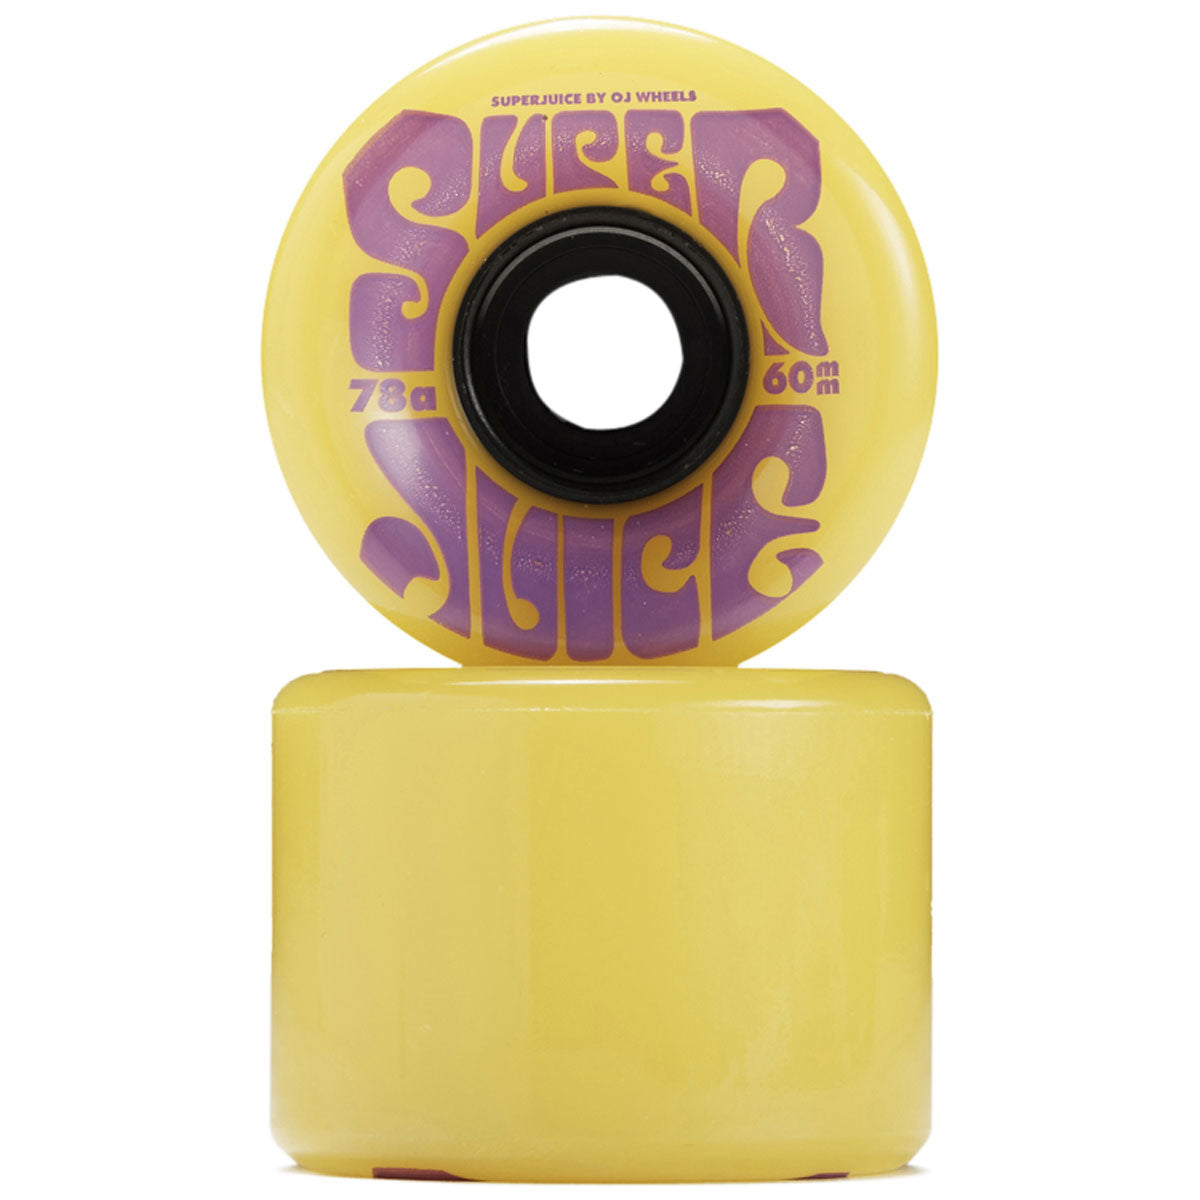 OJ Super Juice 78a Skateboard Wheels - Yellow - 60mm image 2